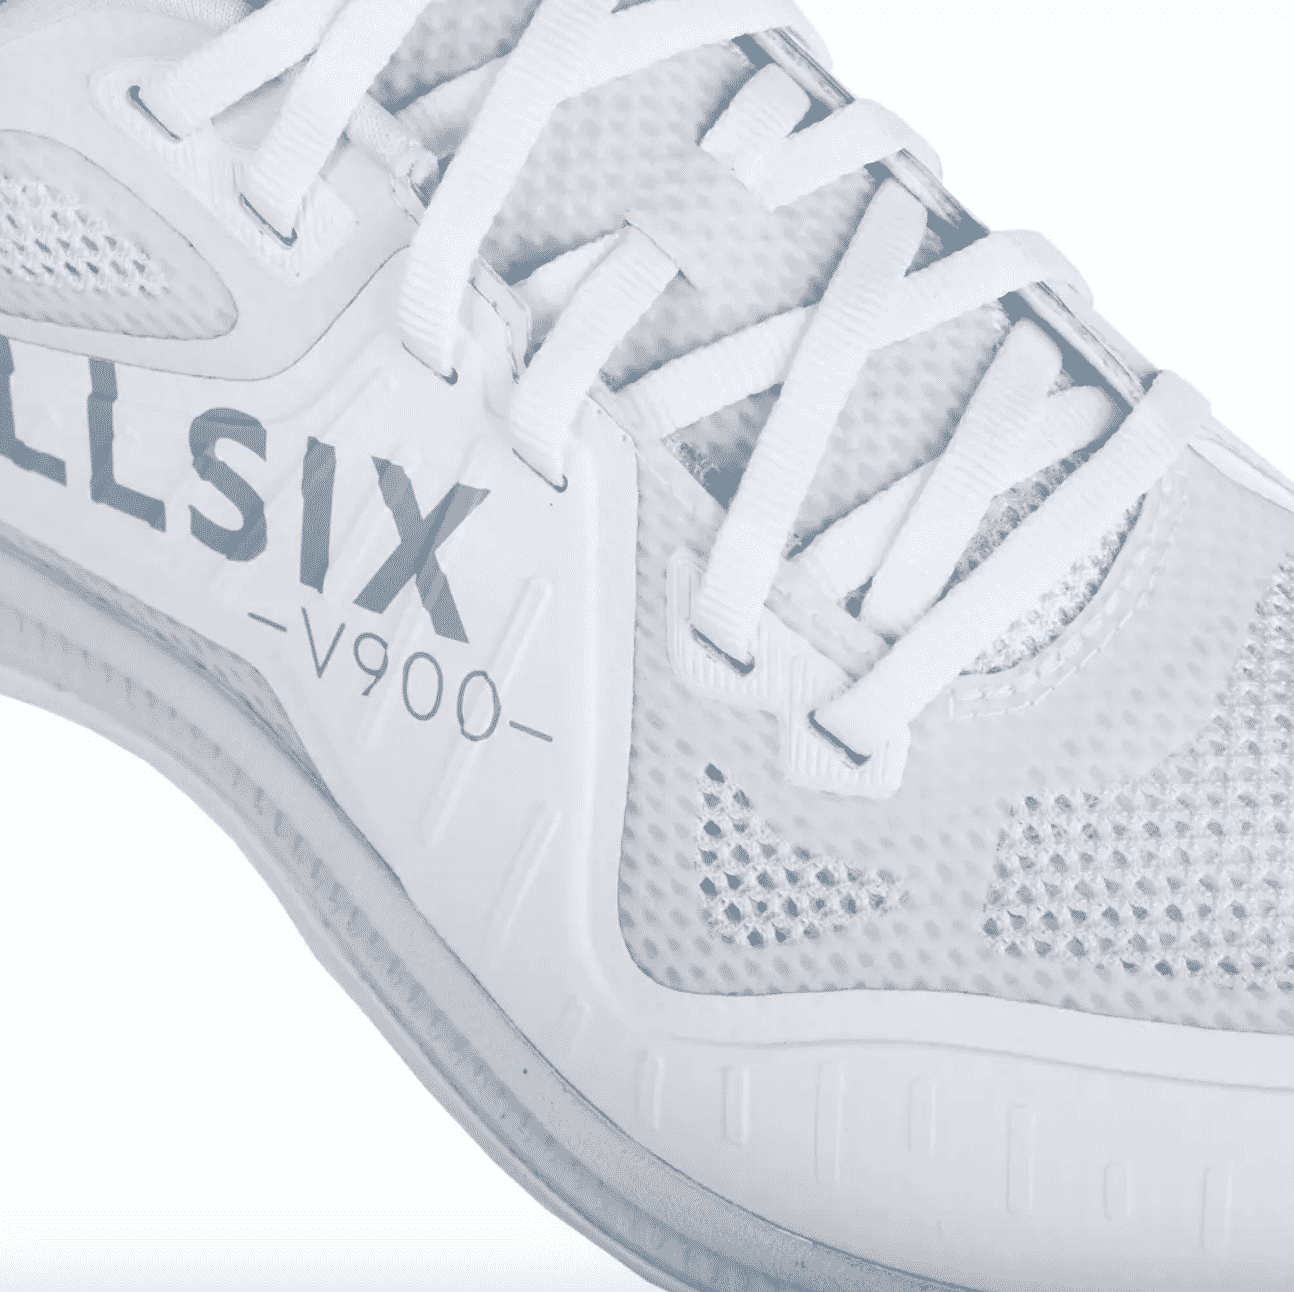 allsix-presente-ses-nouvelles-chaussures-de-volley-vs900-19